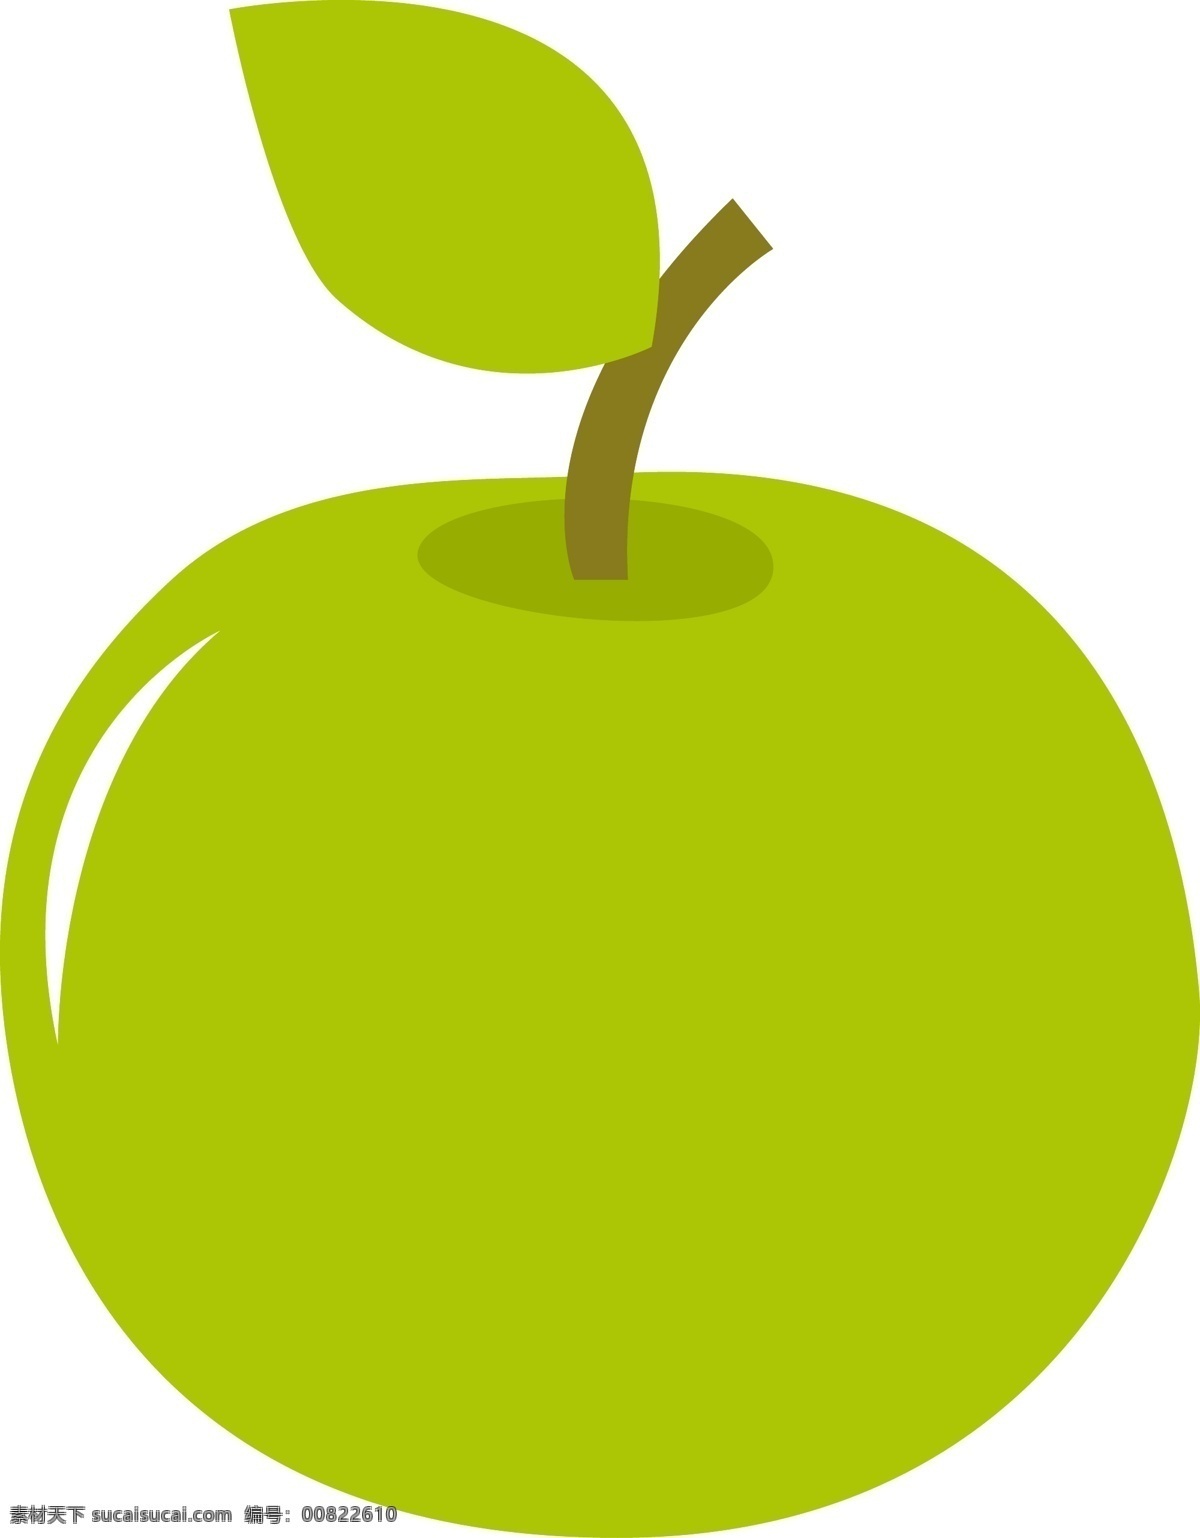 原创 手绘 颗 青苹果 插画 图 苹果 果汁 水果 维生素 天然 美食